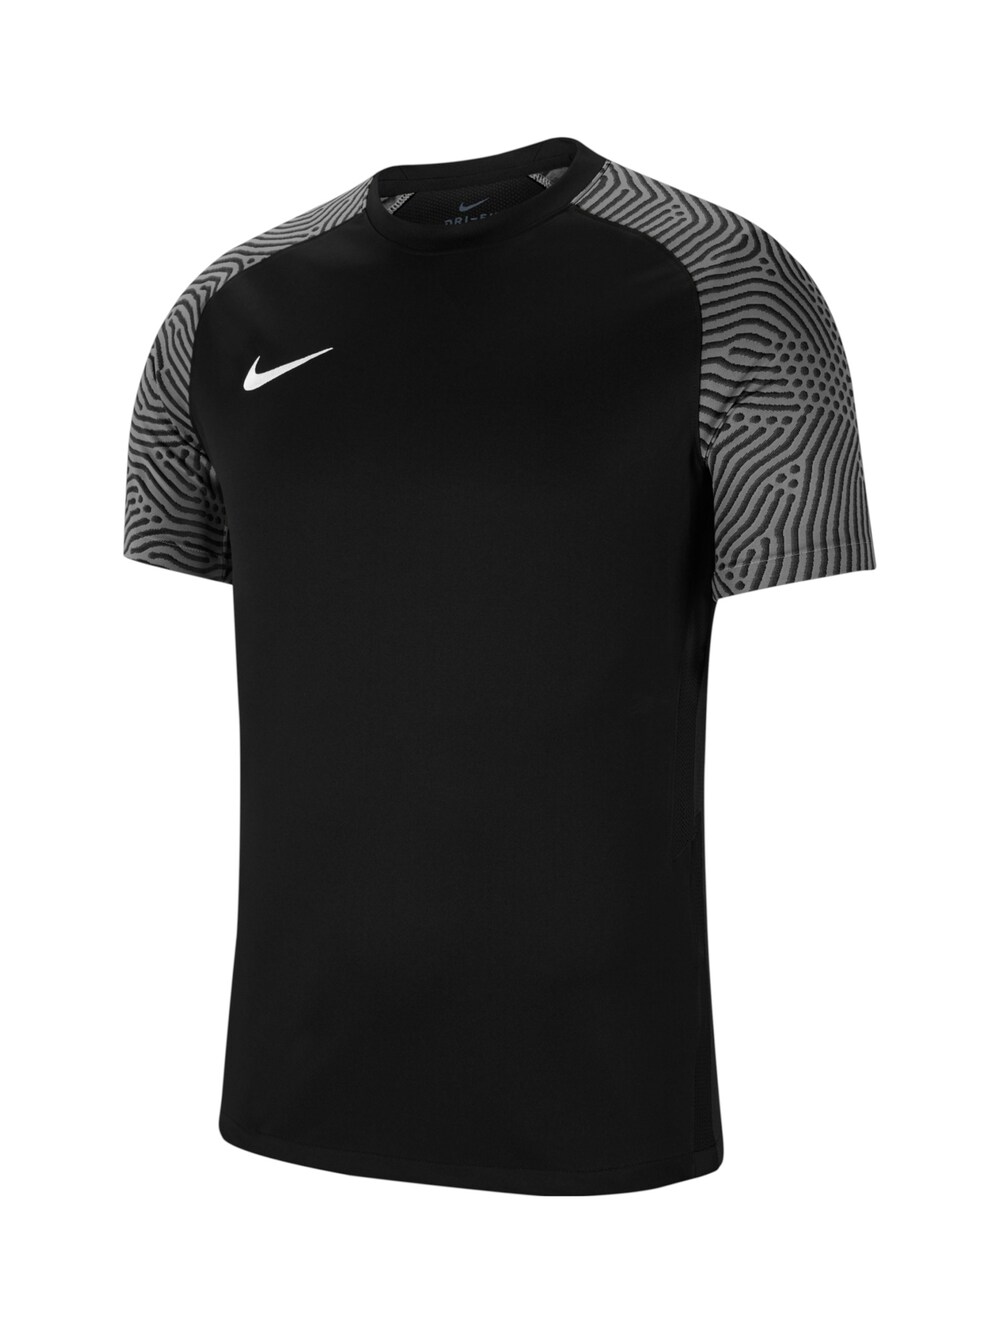 Рубашка для выступлений Nike Strike II, черный футболка игровая подростковая nike strike ii cw3557 100